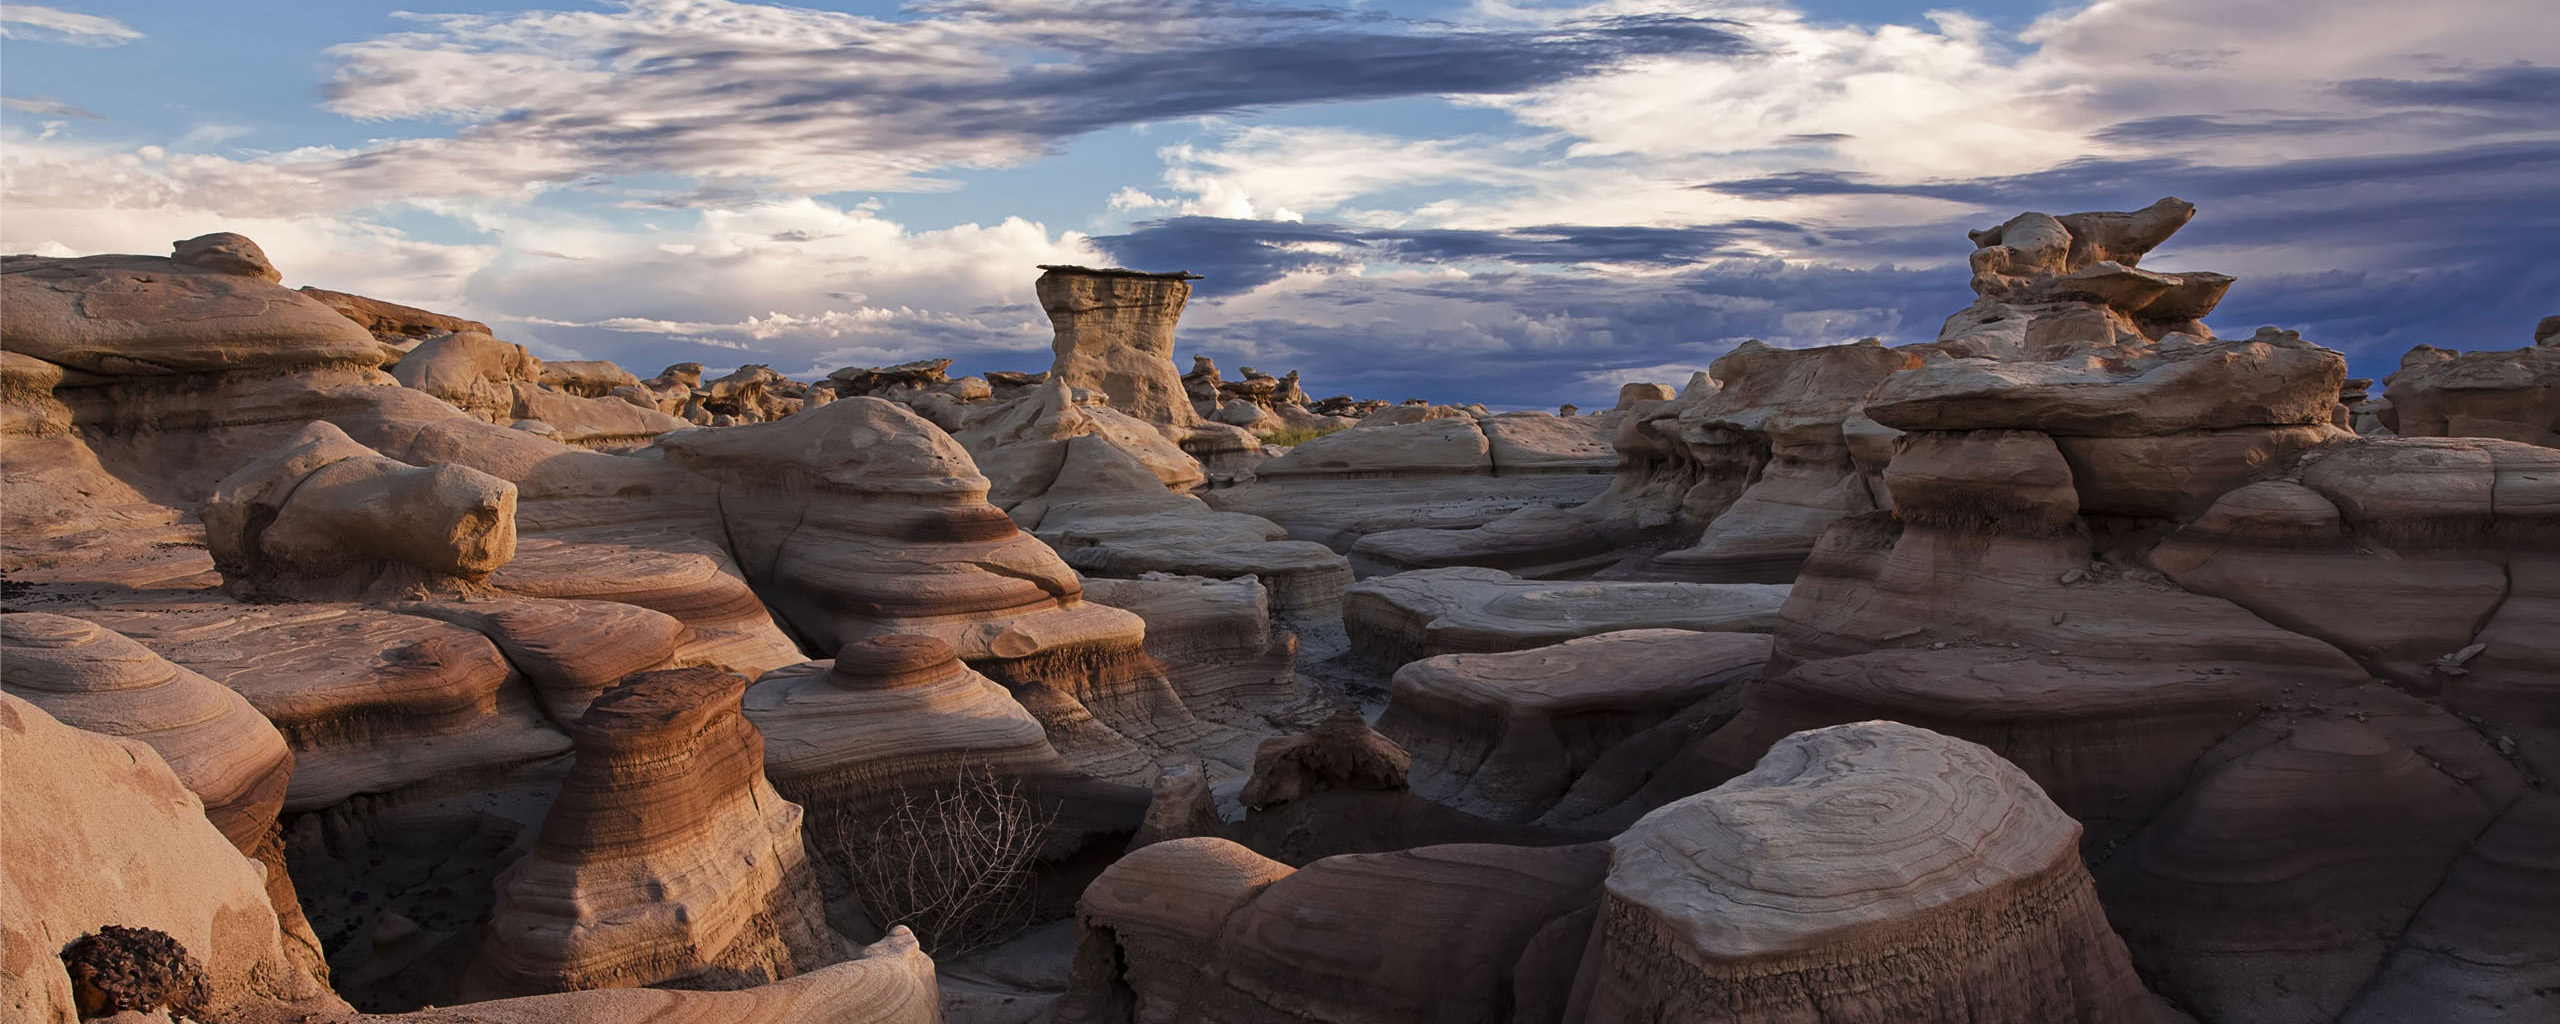 New Mexico Landscape Bisti Badlands Weird Rock 2560x1024